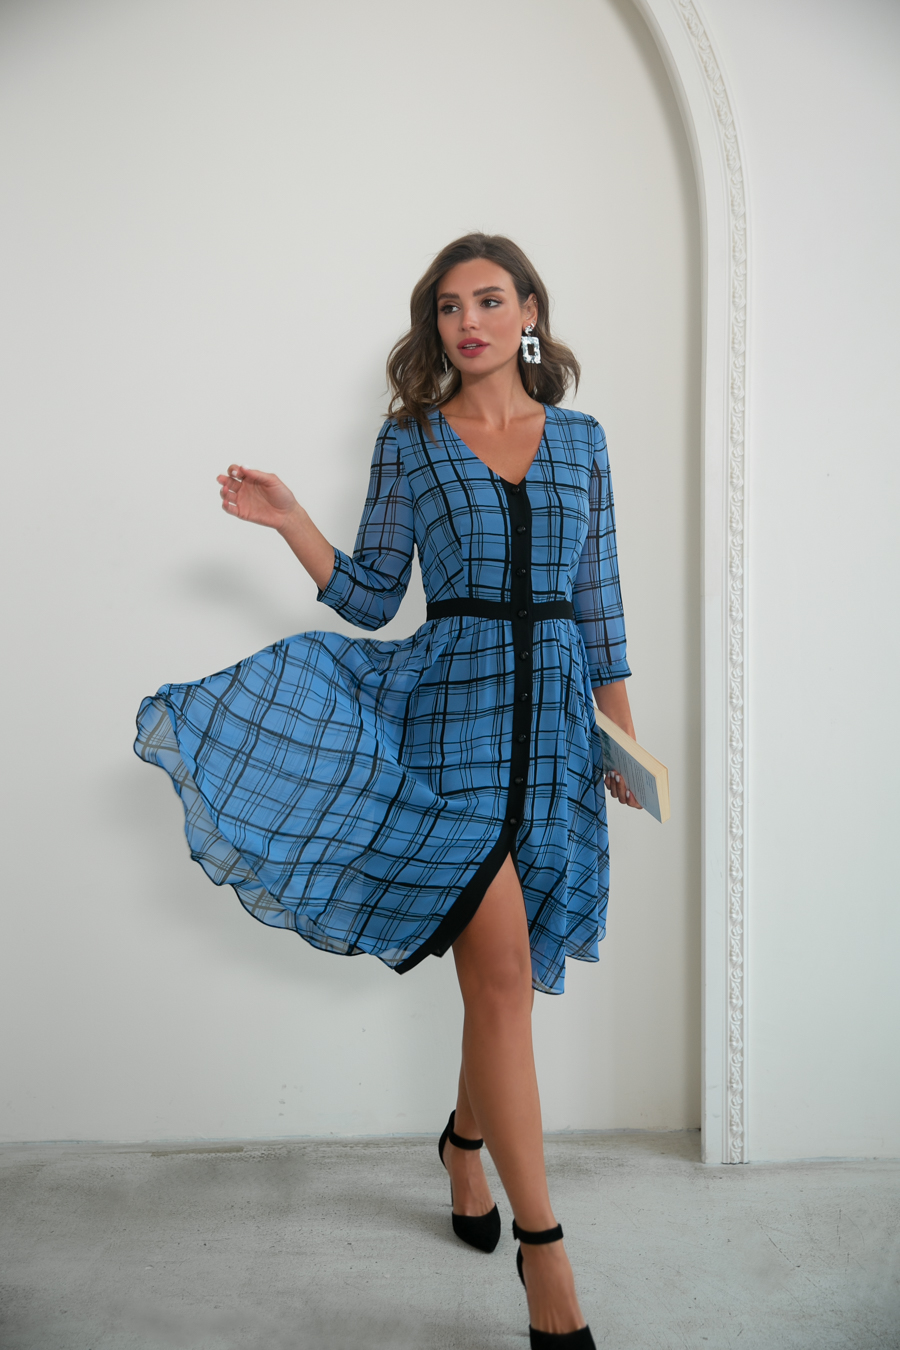 Феллини, шифоновое платье с контрастной отделкой и летящей юбкой, 2 цвета от Ритини